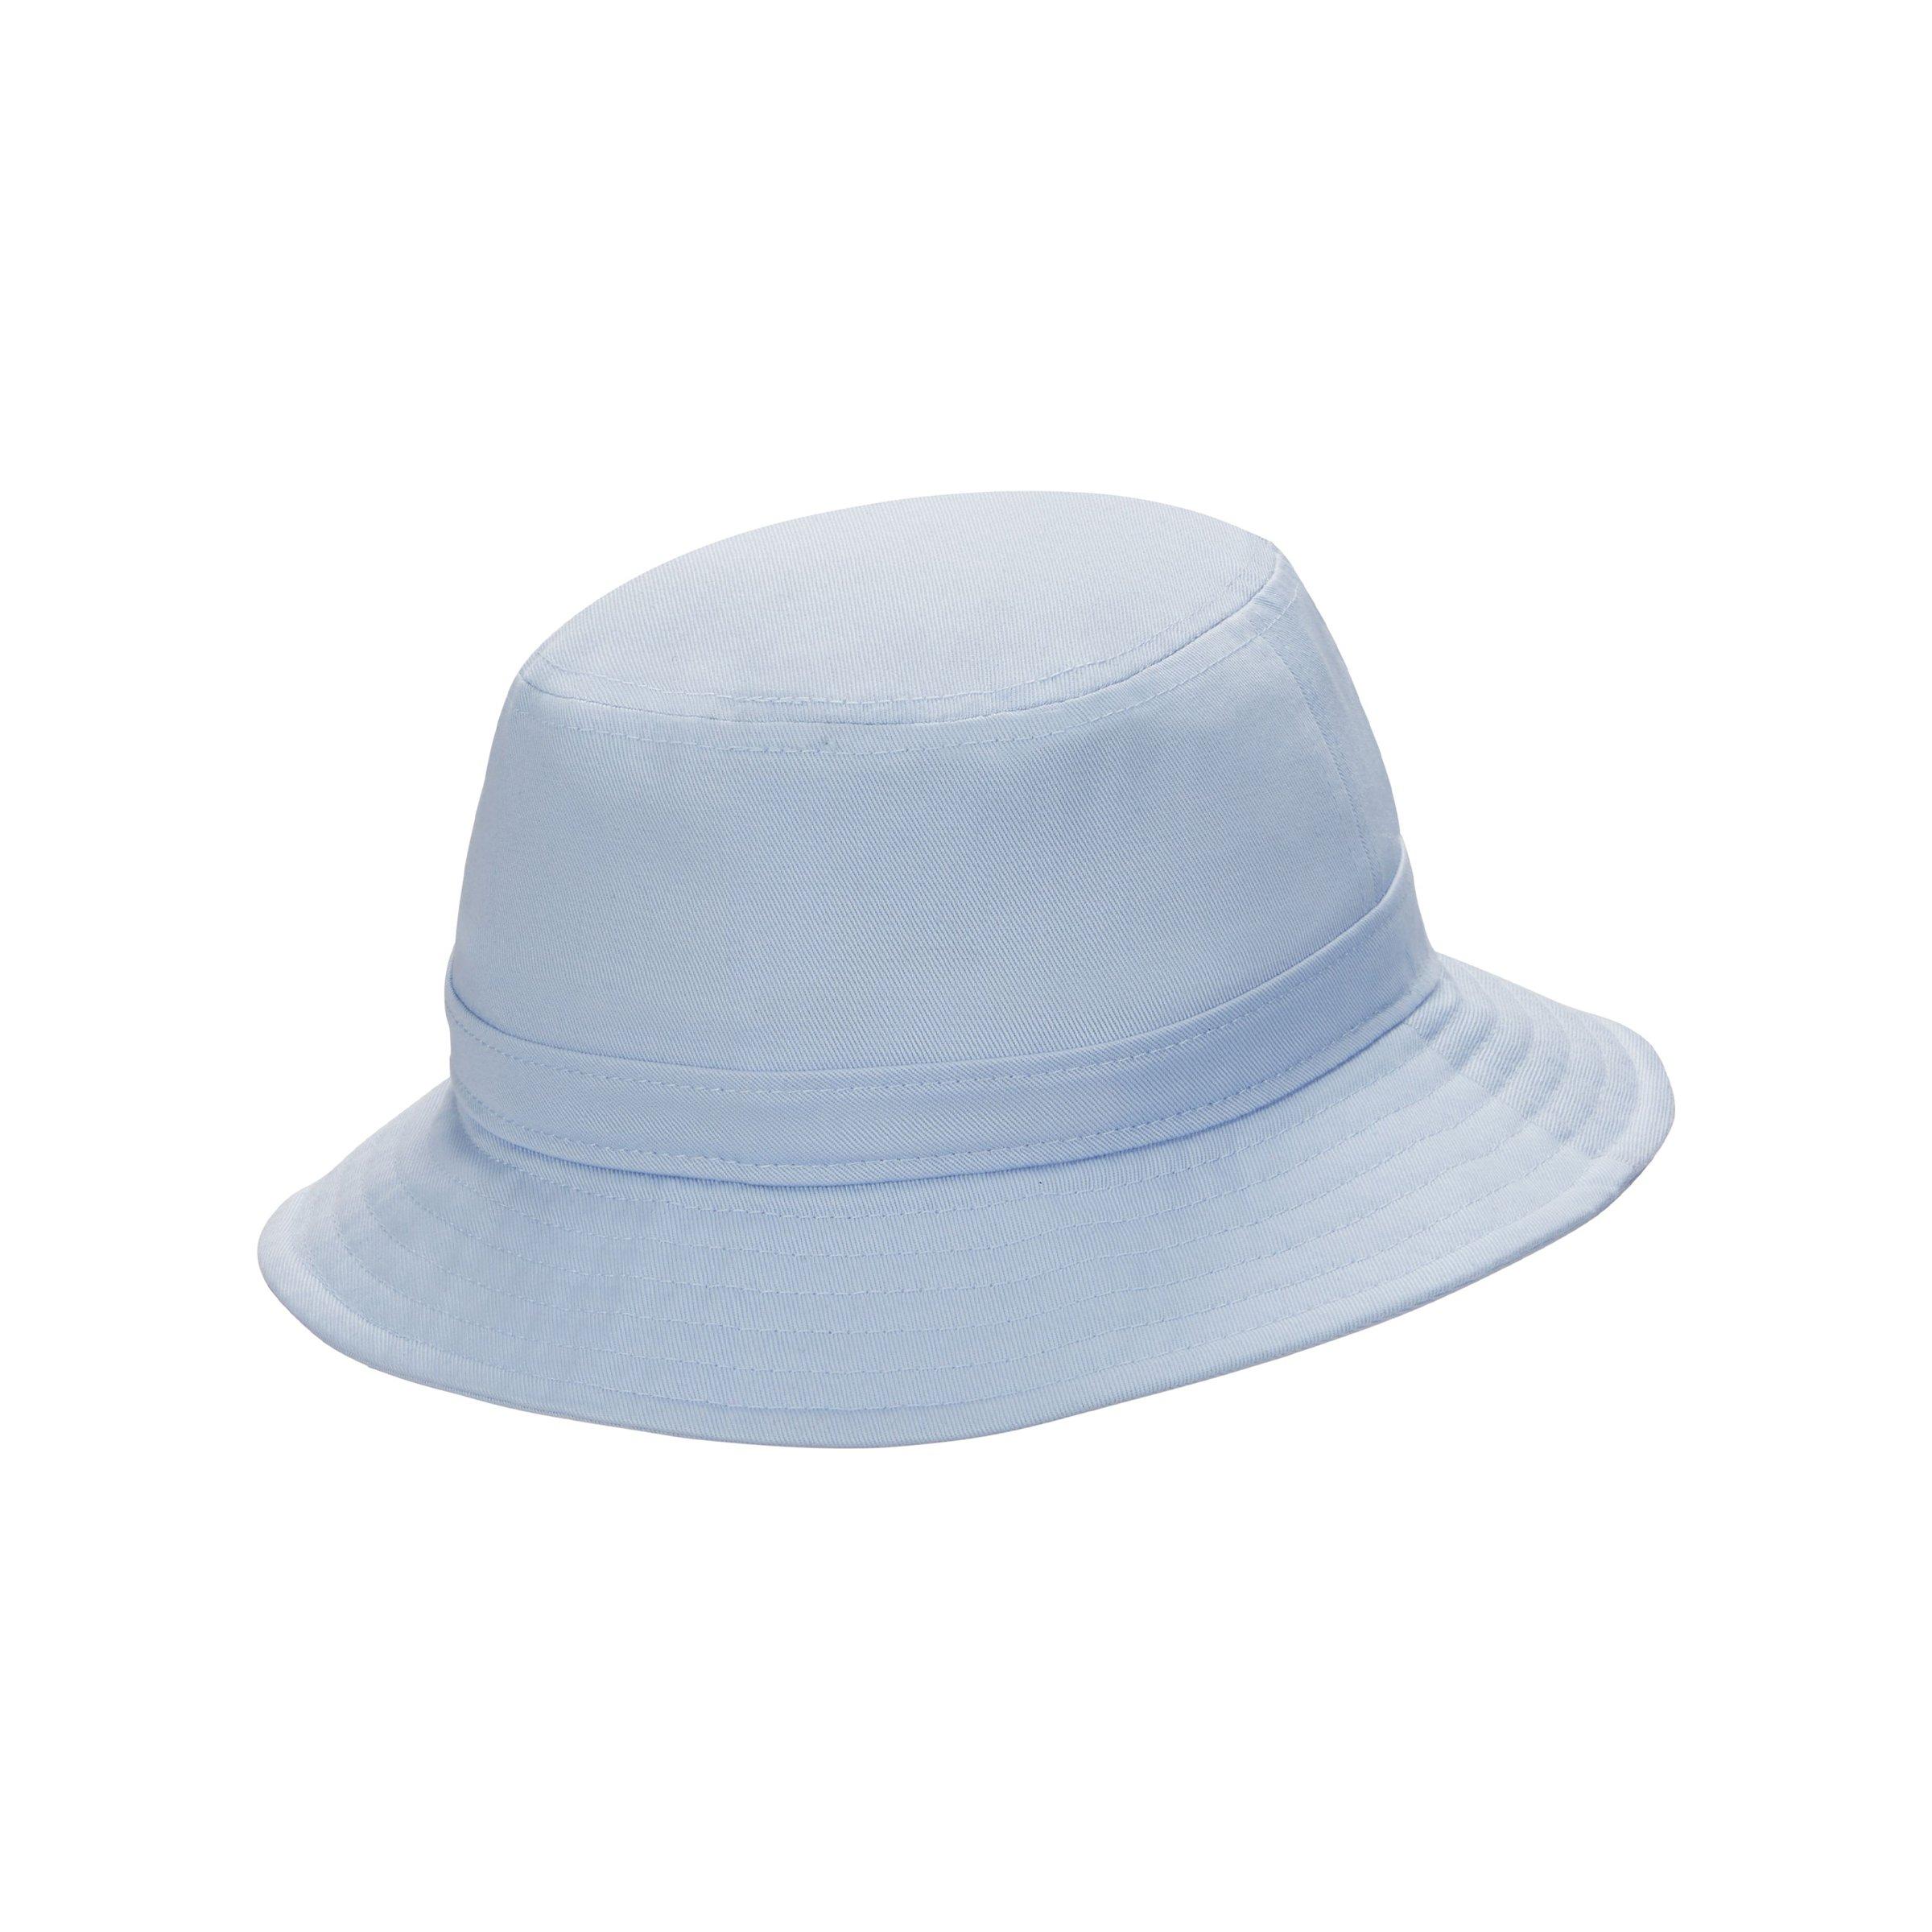 Nike Sportswear Futura Core Bucket Hat - Light Blue - Hibbett | City Gear